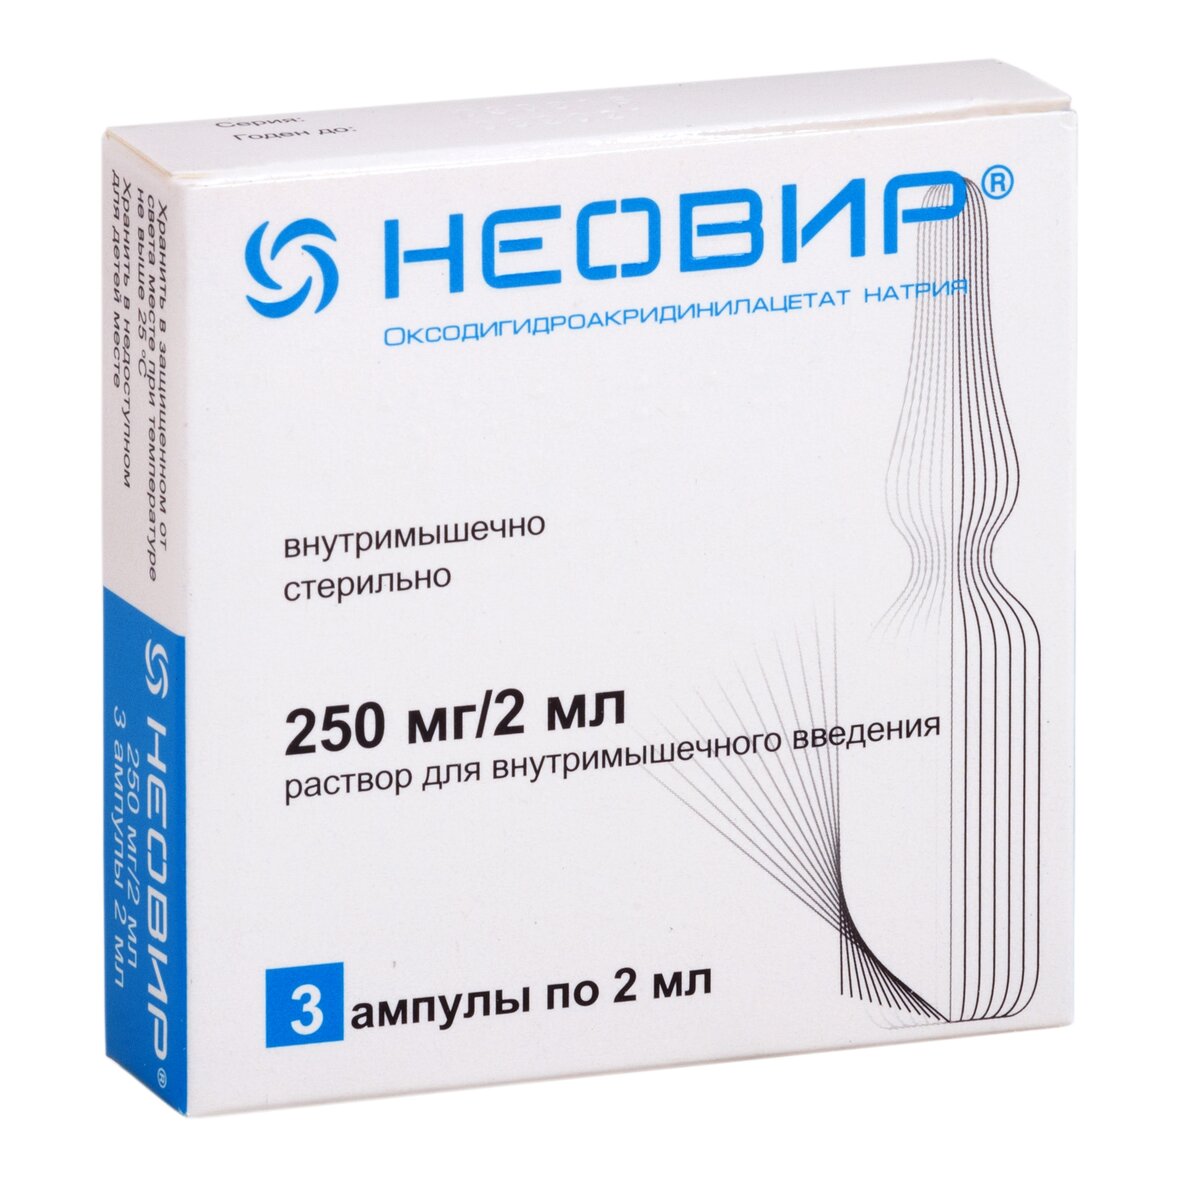 Неовир раствор для внутримышечного введения 250 мг/2 мл ампулы 2 мл 3 шт.